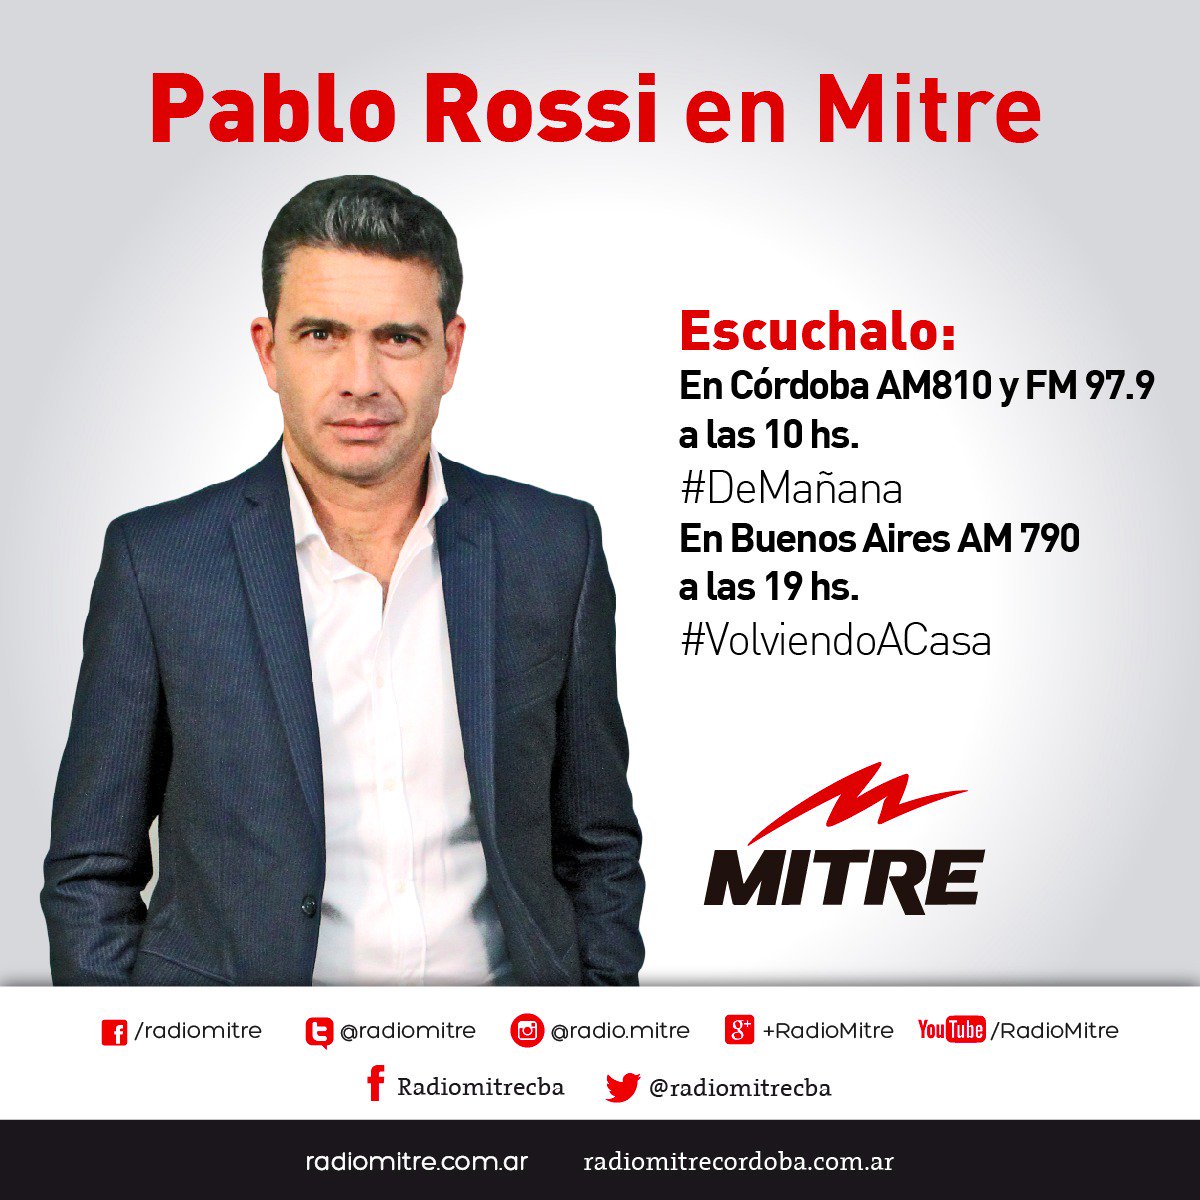 Radio Mitre on Twitter: "#RossiEnMitre | @pabloirossi se suma a la  programación de Radio Mitre desde el lunes 6 de febrero! Escuchalo  #DeMañana y #VolviendoACasa https://t.co/N0EK6BA2PW" / Twitter